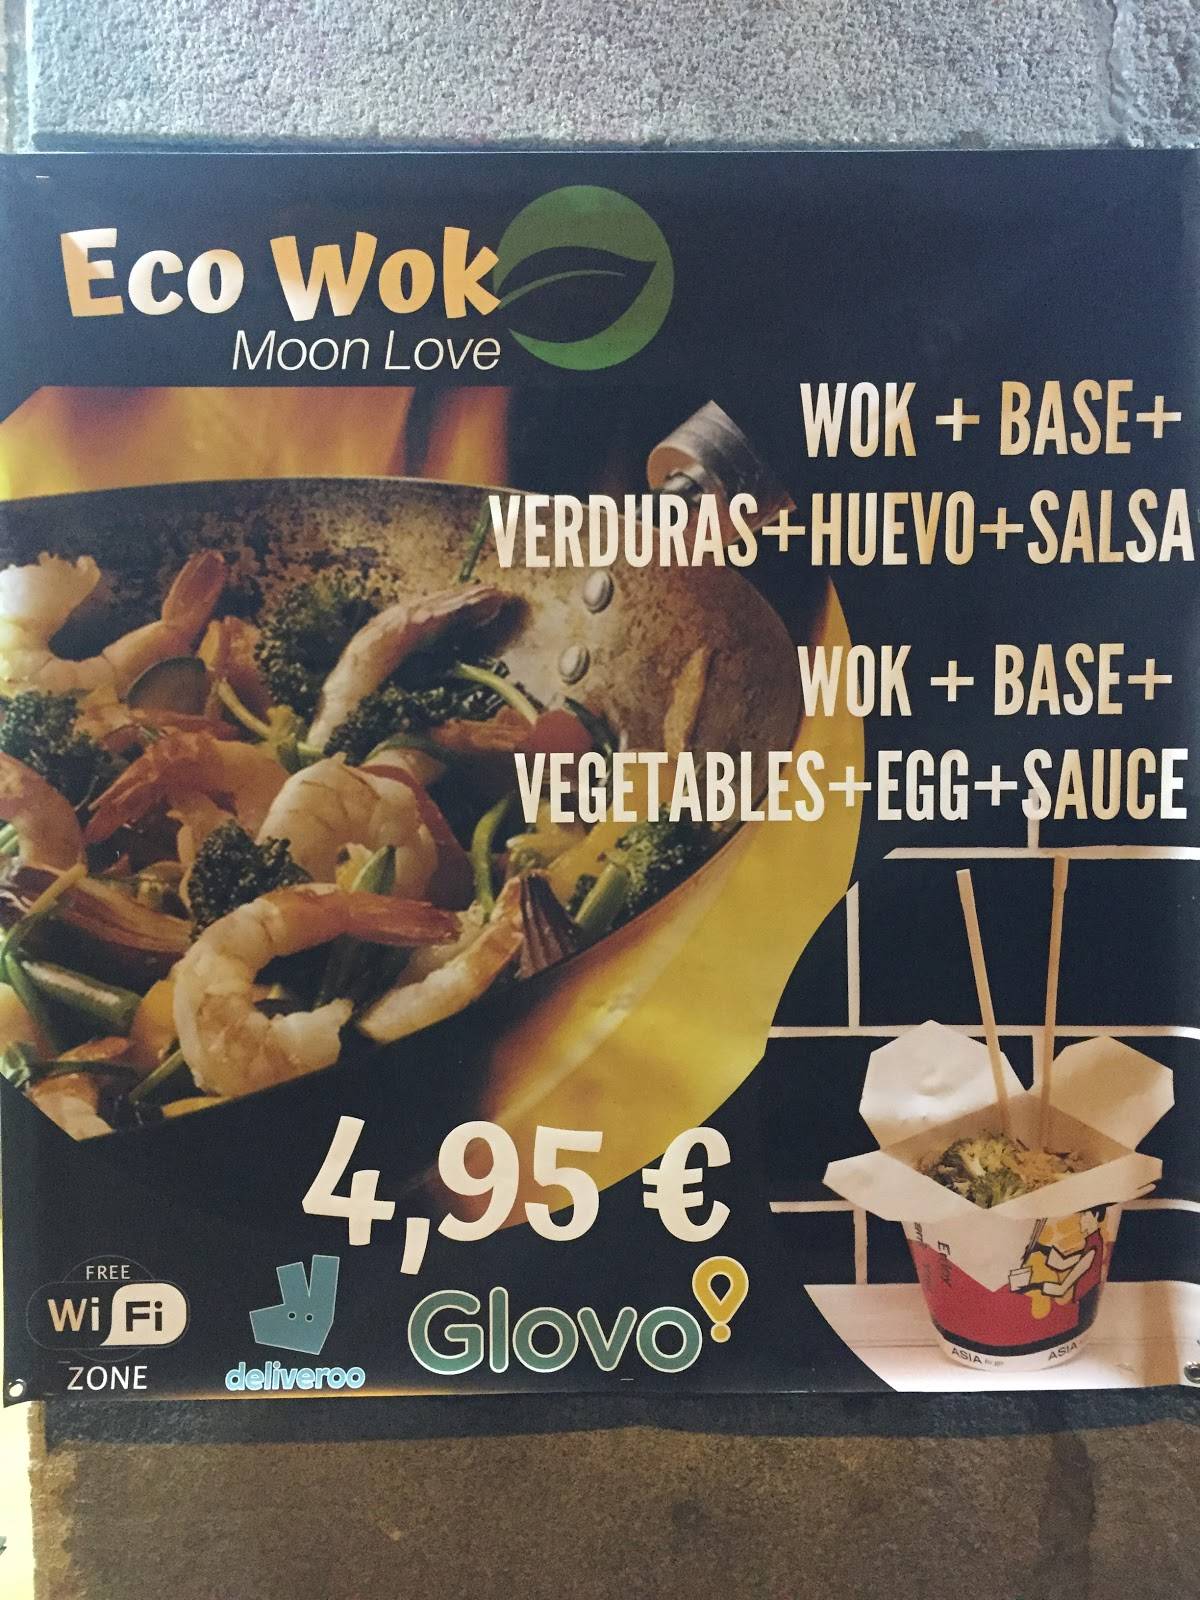 Gratificante irregular diversión Carta del restaurante Eco Wok Moon Love, Madrid